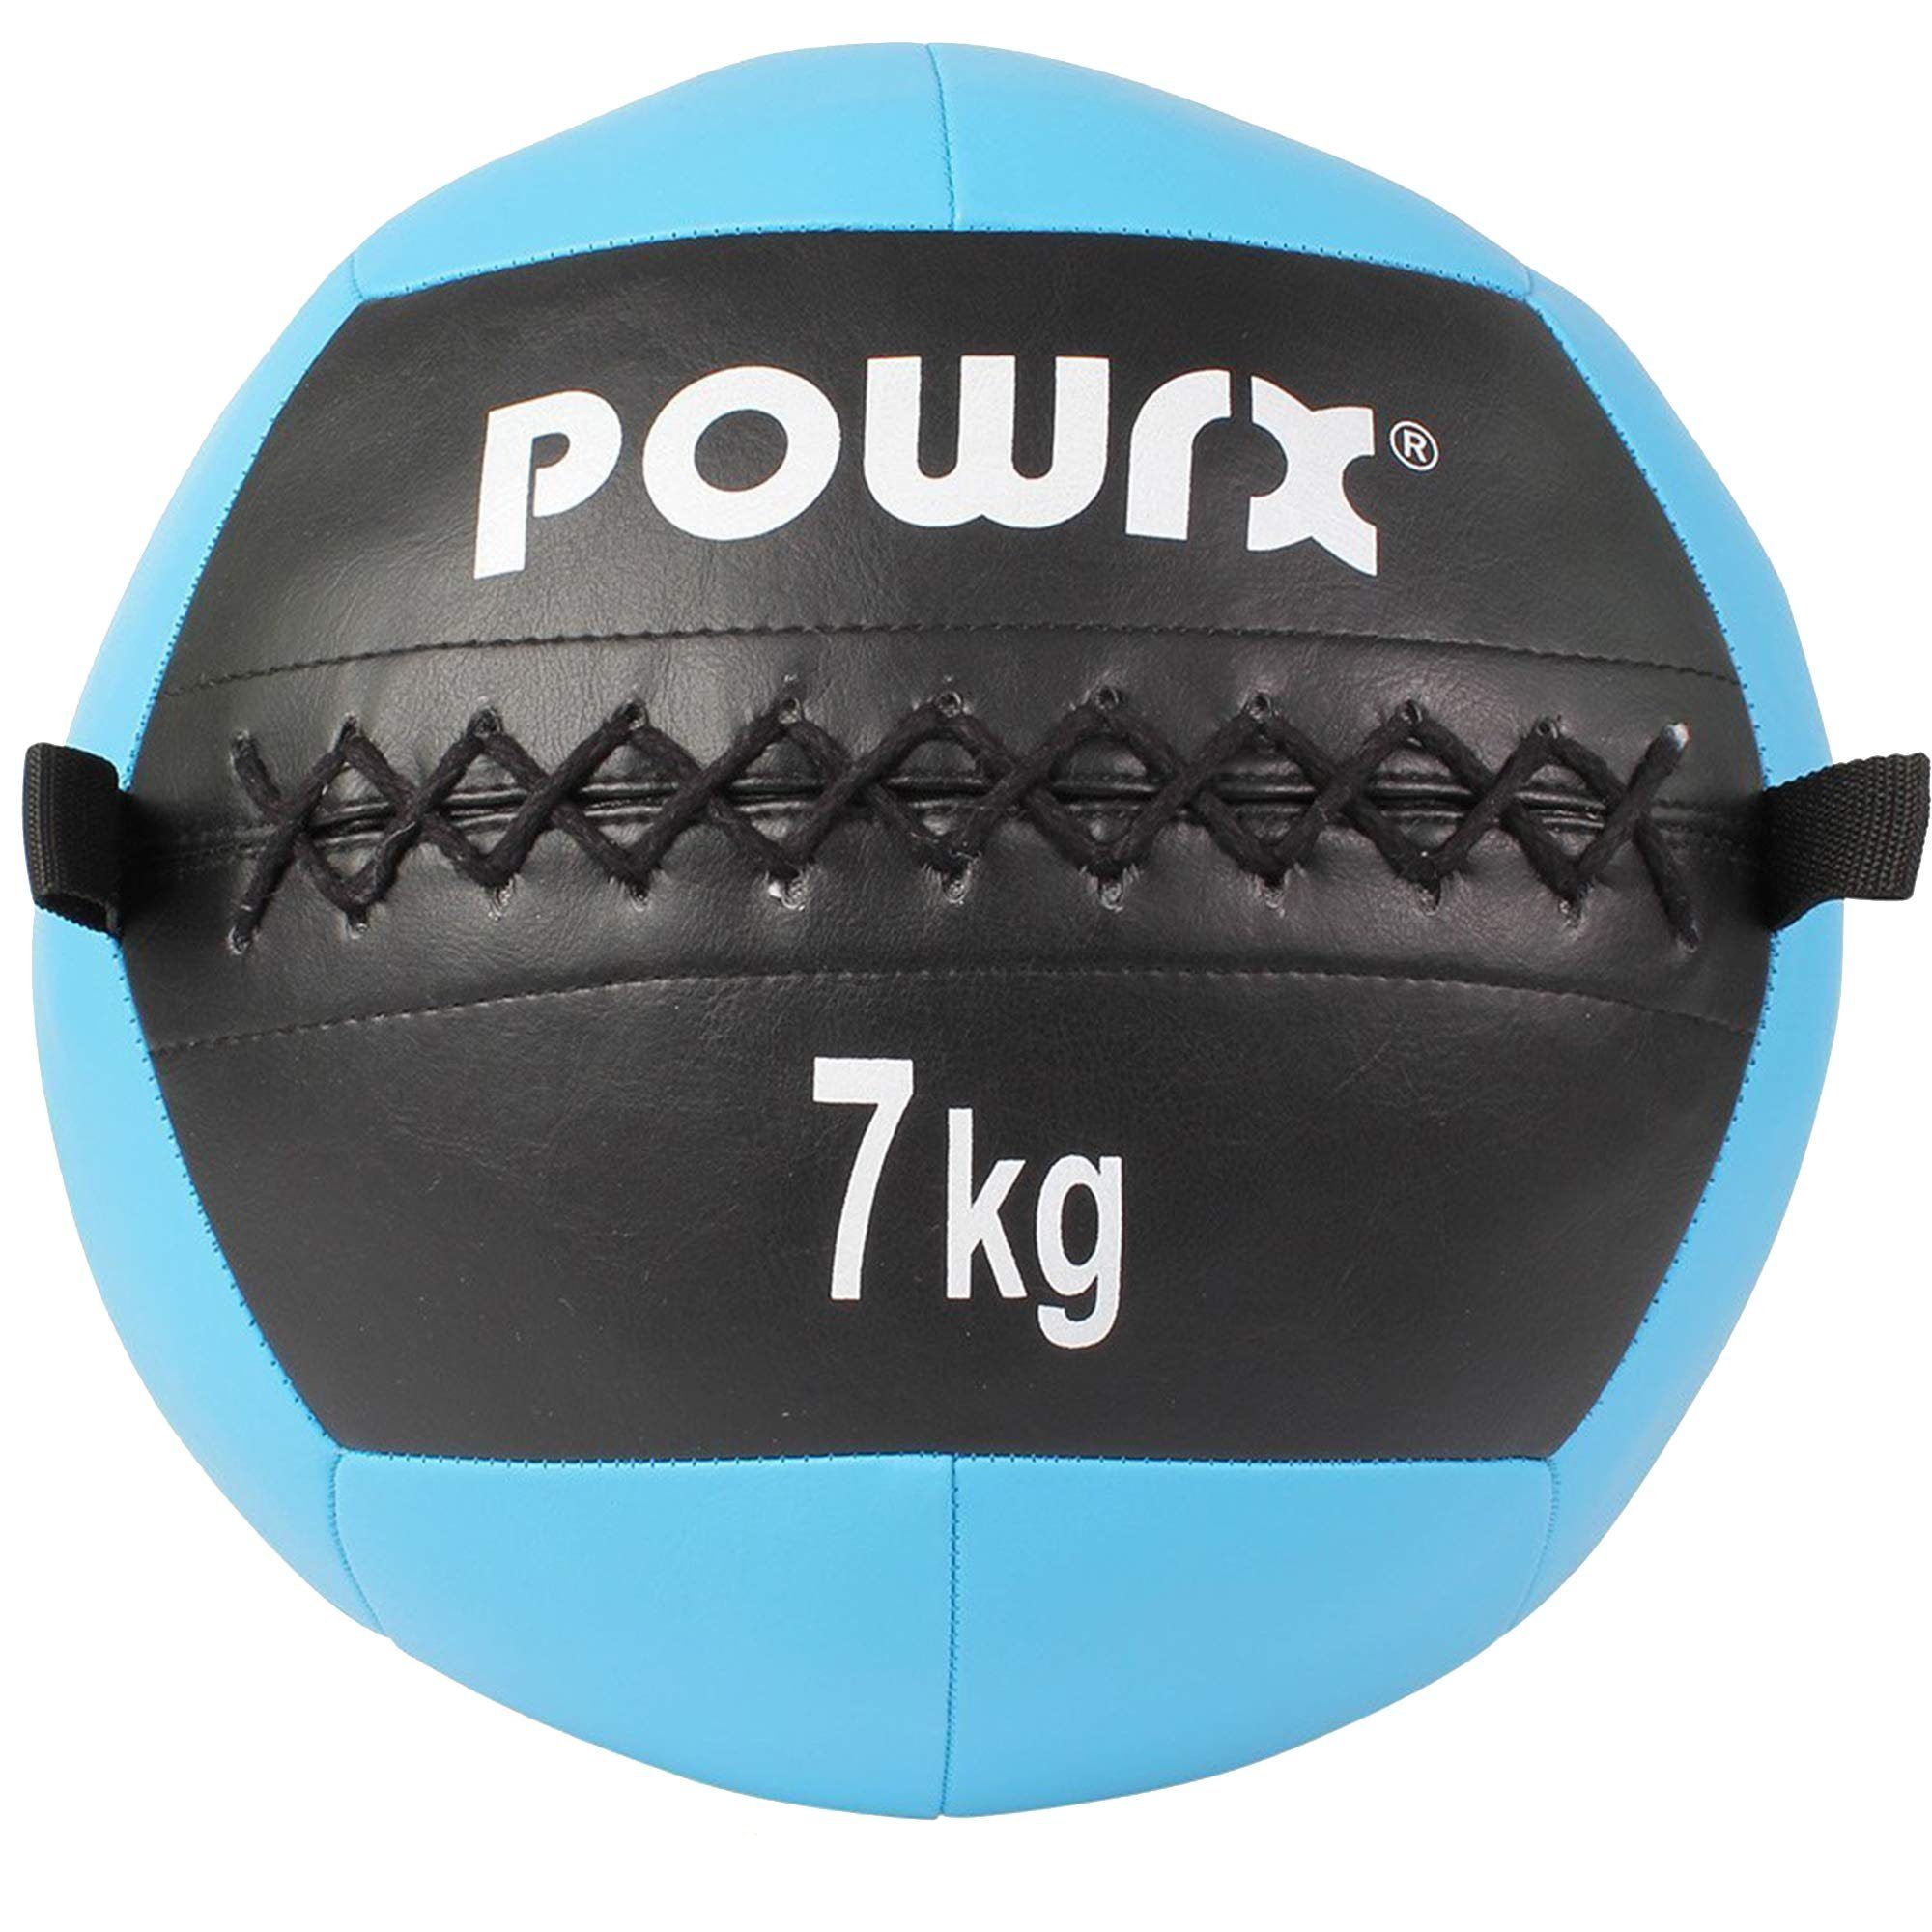 POWRX Medizinball Gewichtsball 2-10 kg, versch. Farben (7 kg/Cyan), 7 Kg / Cyan Kunstleder